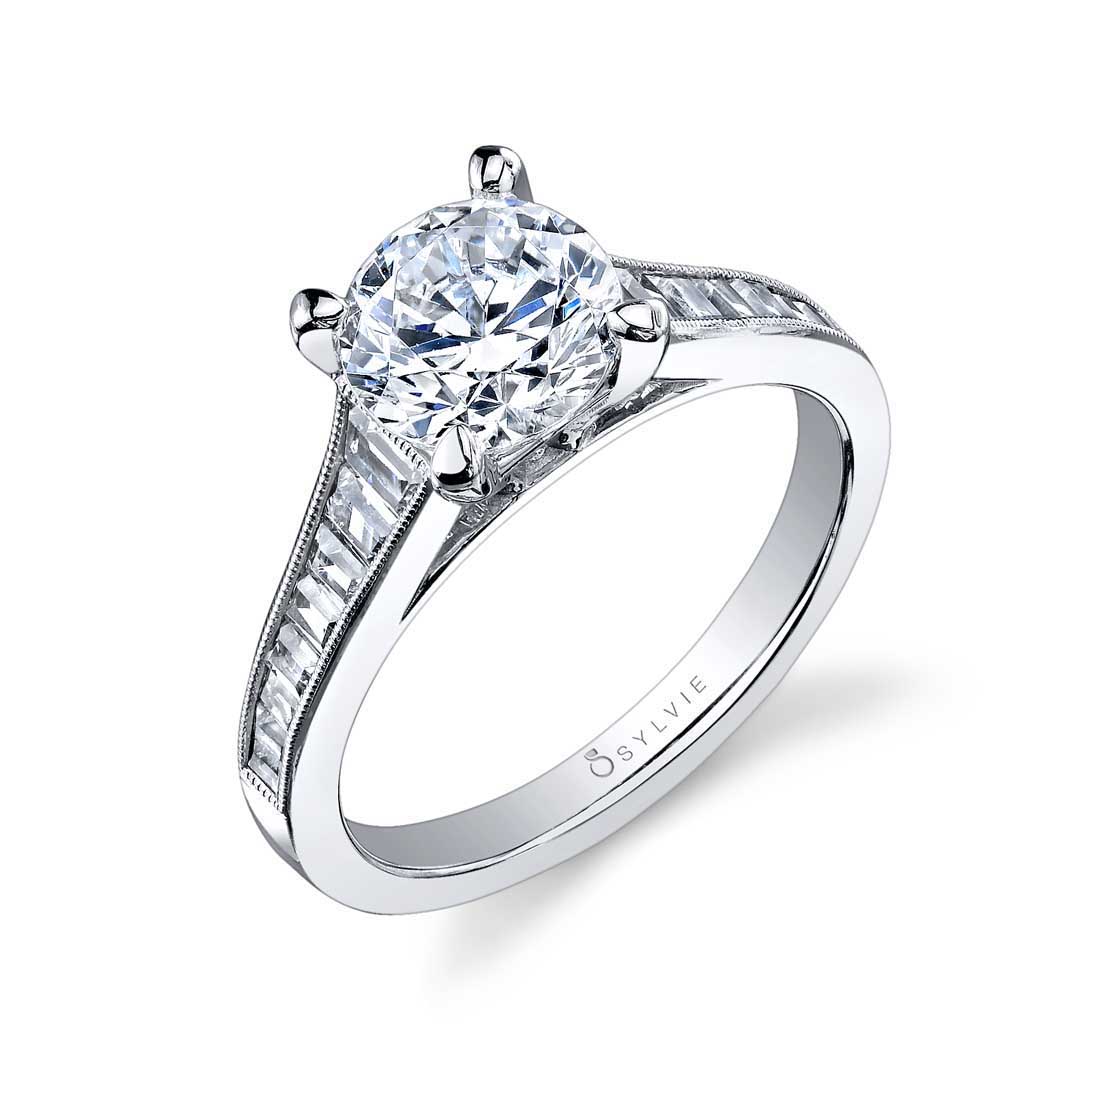 SY711 Princess Cut Engagement Ring